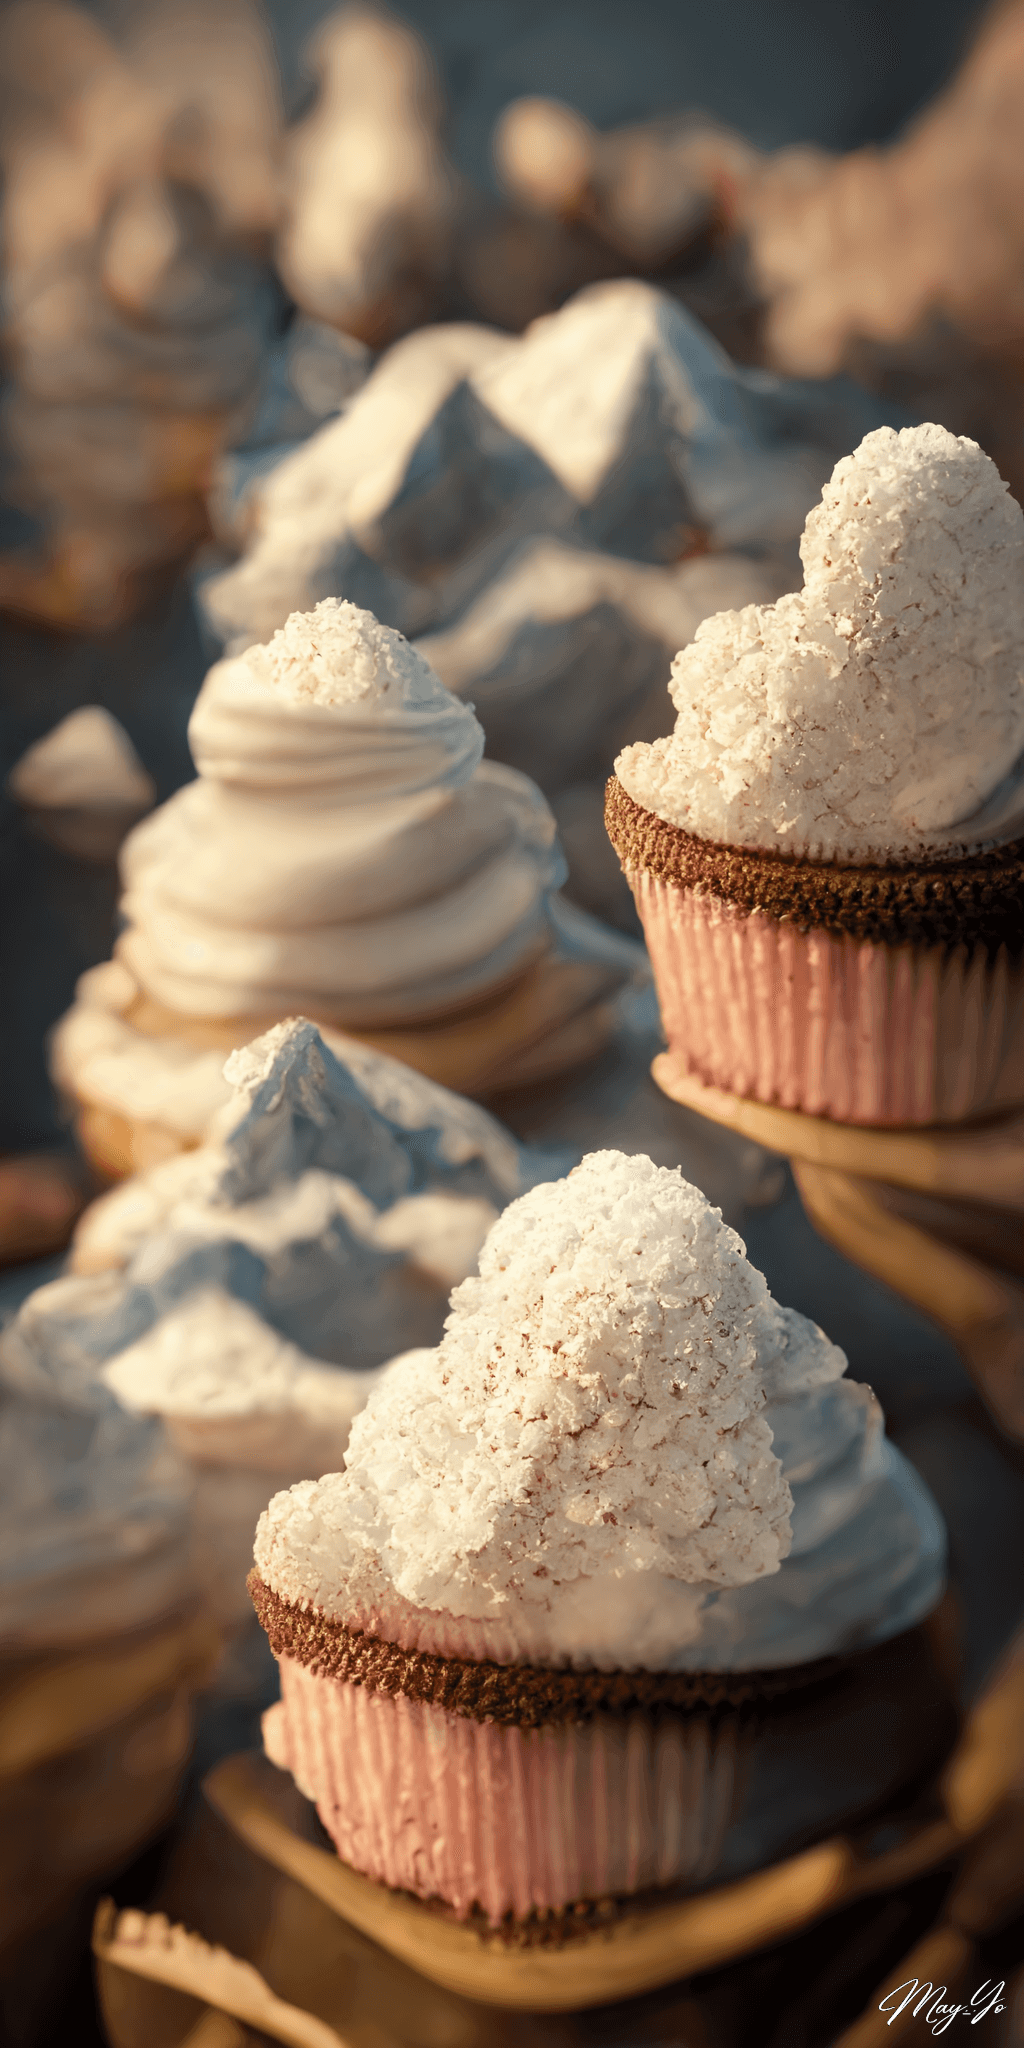 クリームがたっぷりのカップケーキでできた山のイラスト 山のようなカップケーキの待受 AIイラスト待受 縦長画像 cupcake with cream illustration tasty mountain